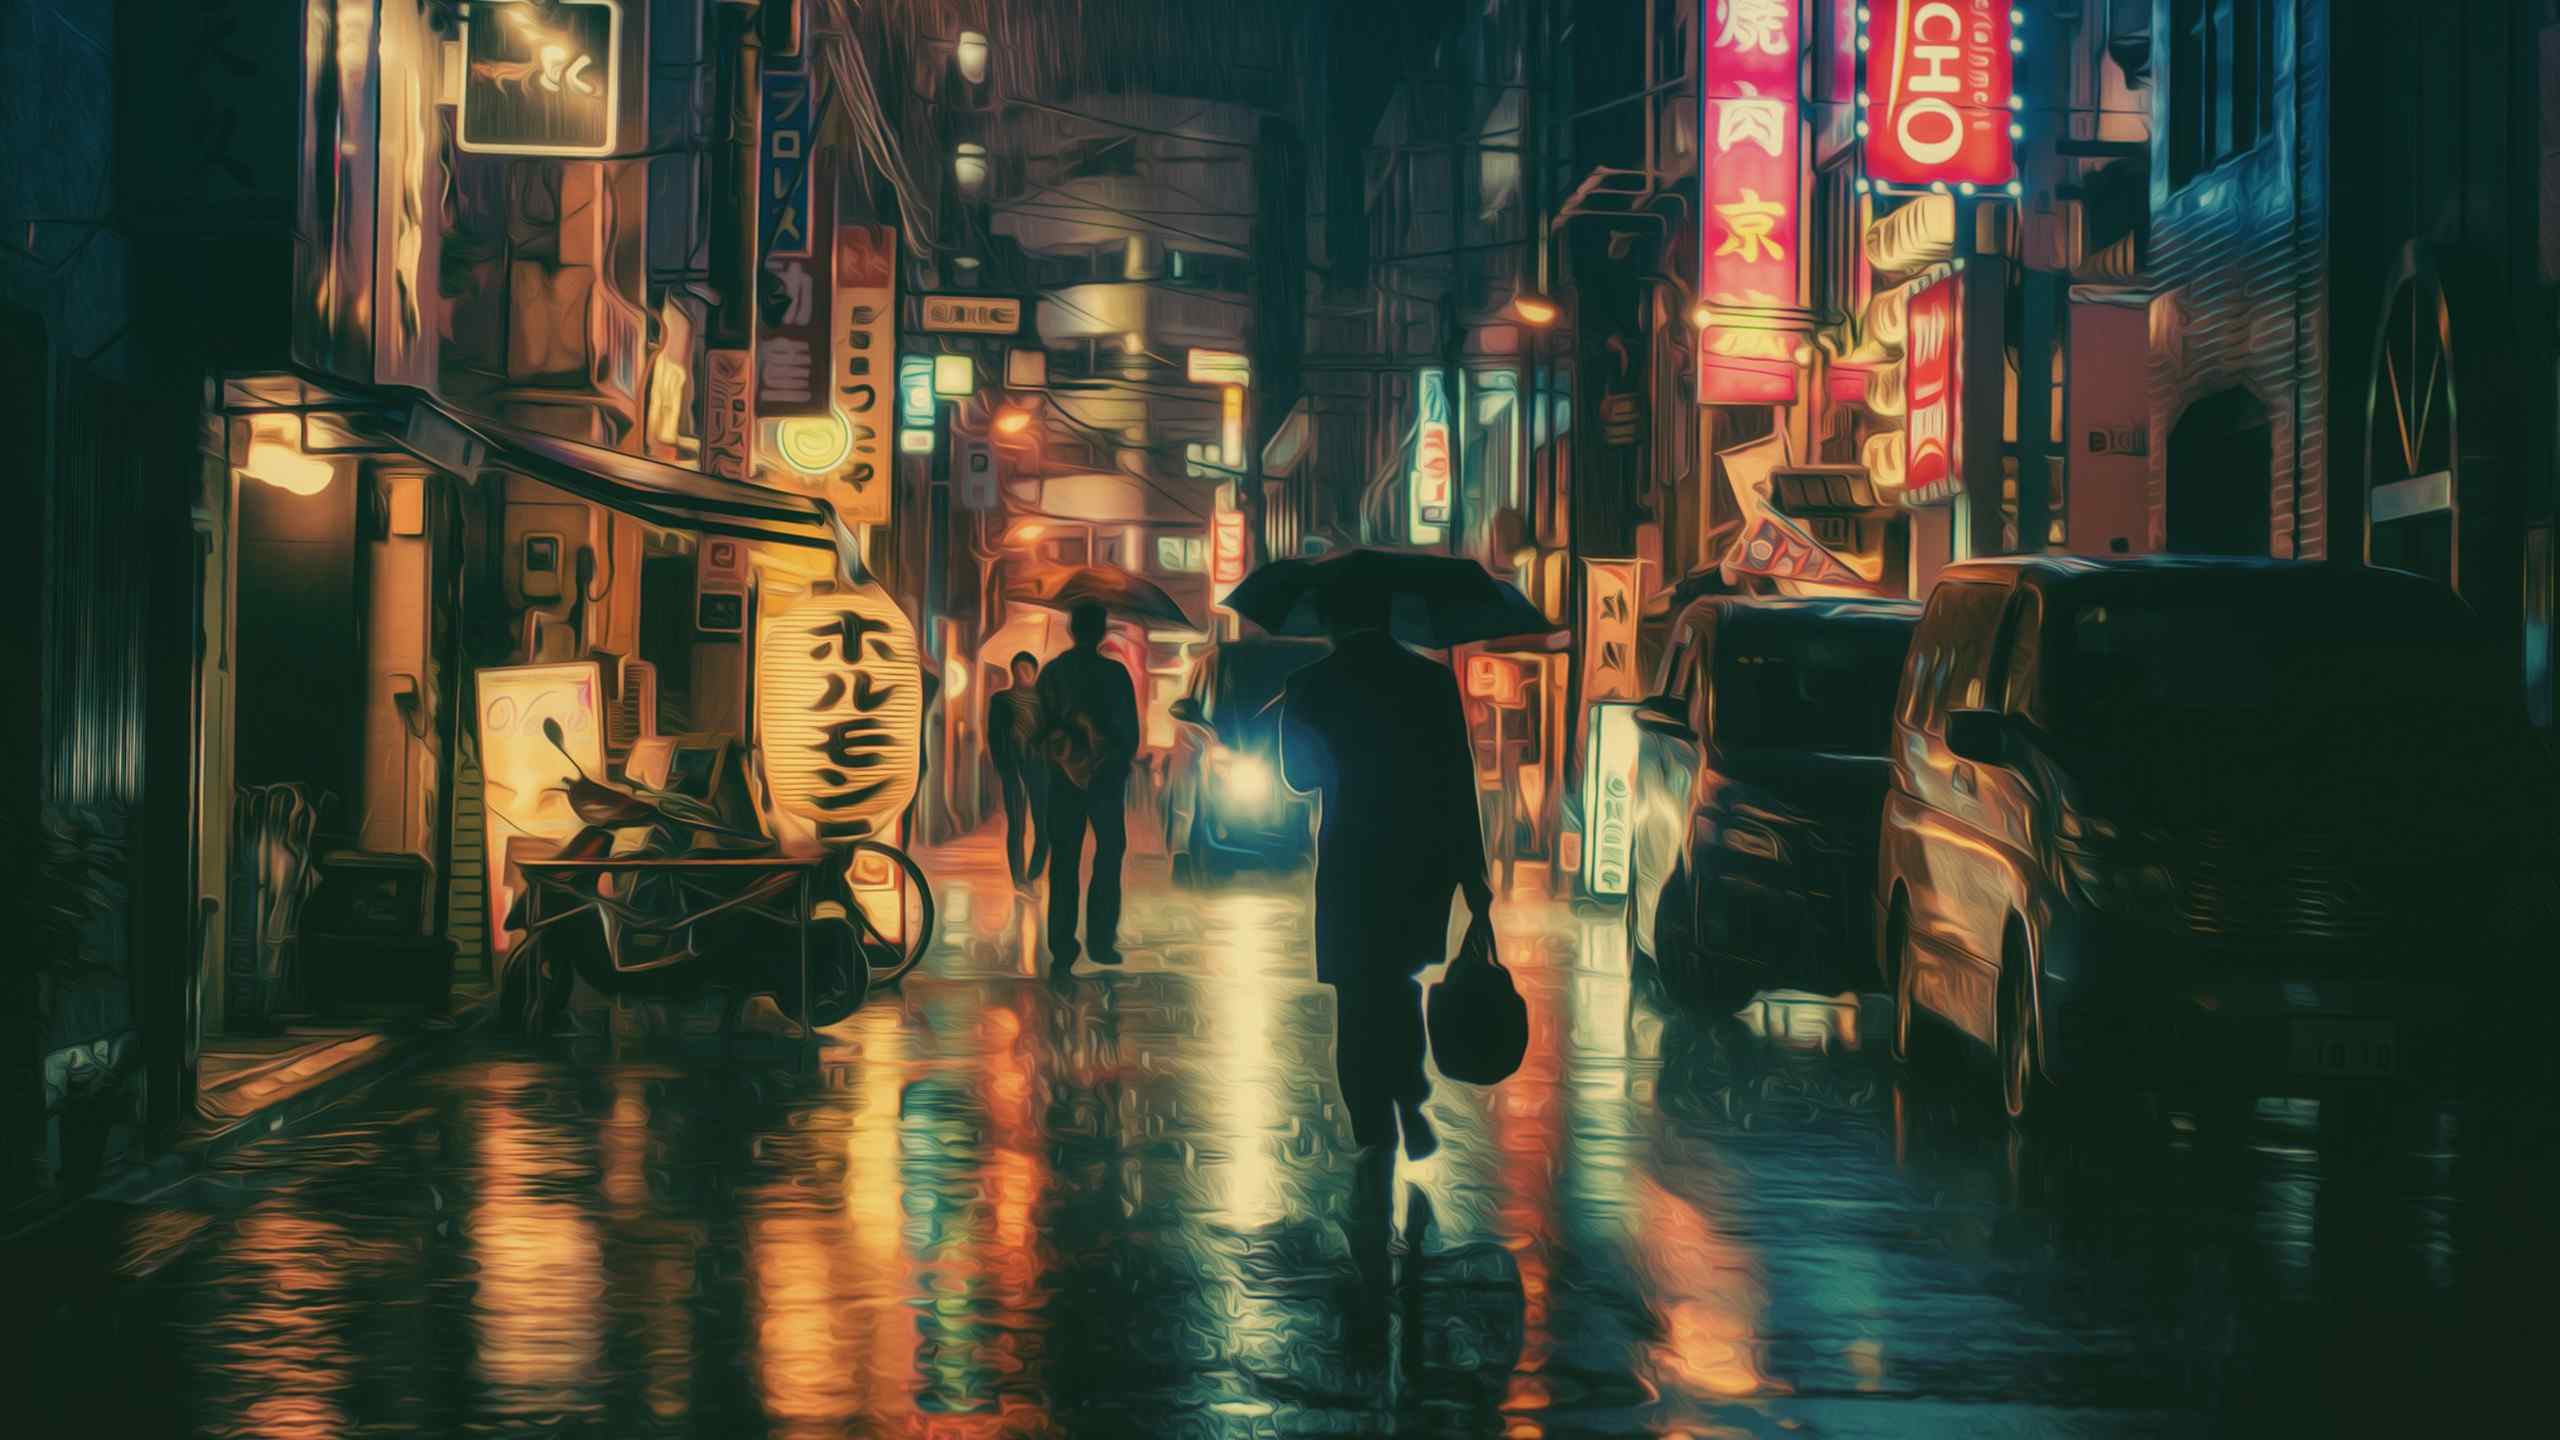 日本街头唯美摄影桌面壁纸 个性图片第一辑